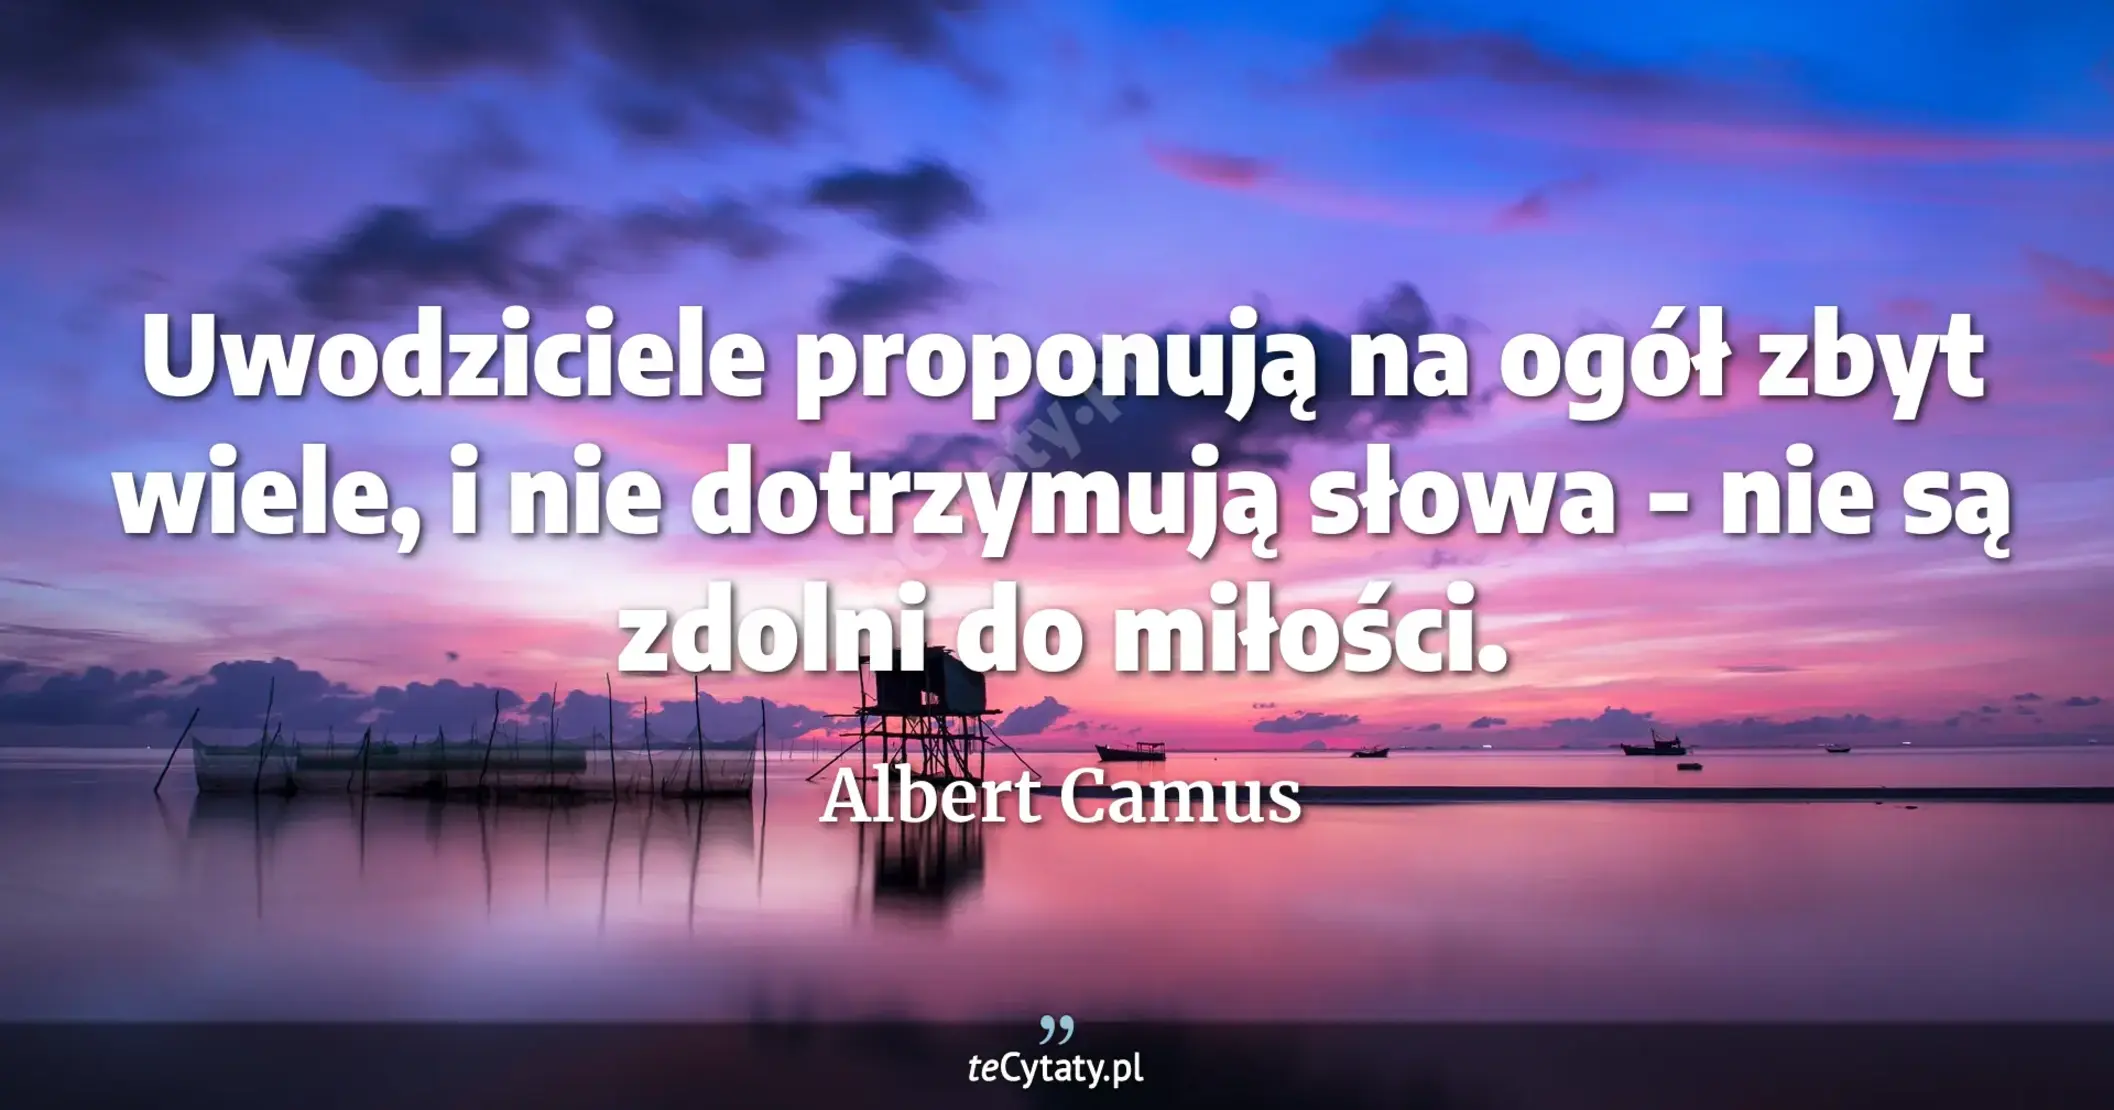 Uwodziciele proponują na ogół zbyt wiele, i nie dotrzymują słowa - nie są zdolni do miłości. - Albert Camus